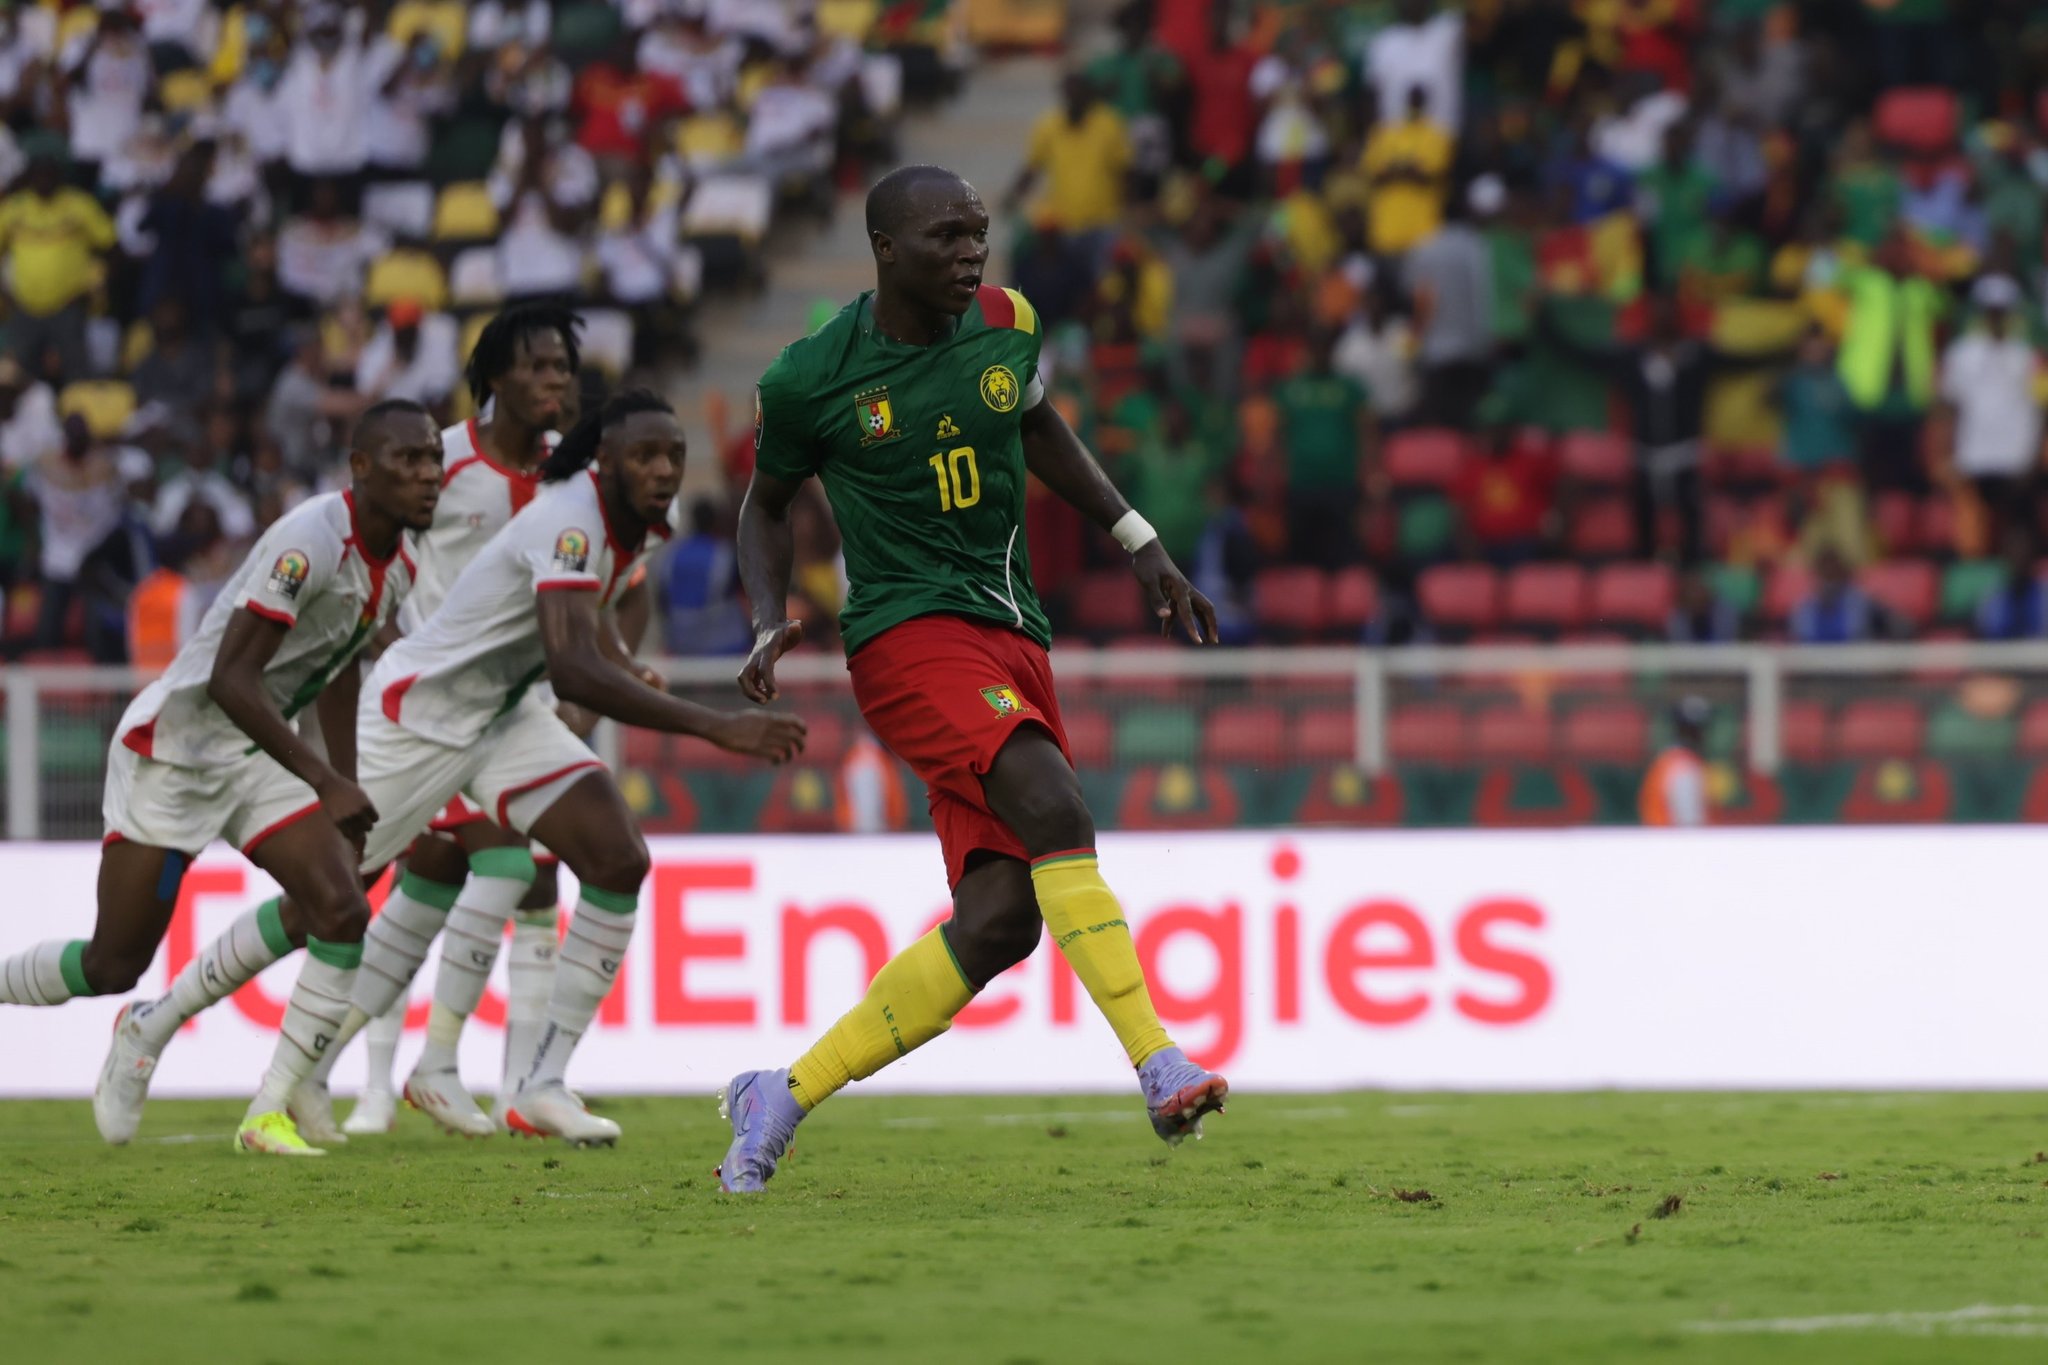 مباراة الكاميرون وبوركينا فاسو